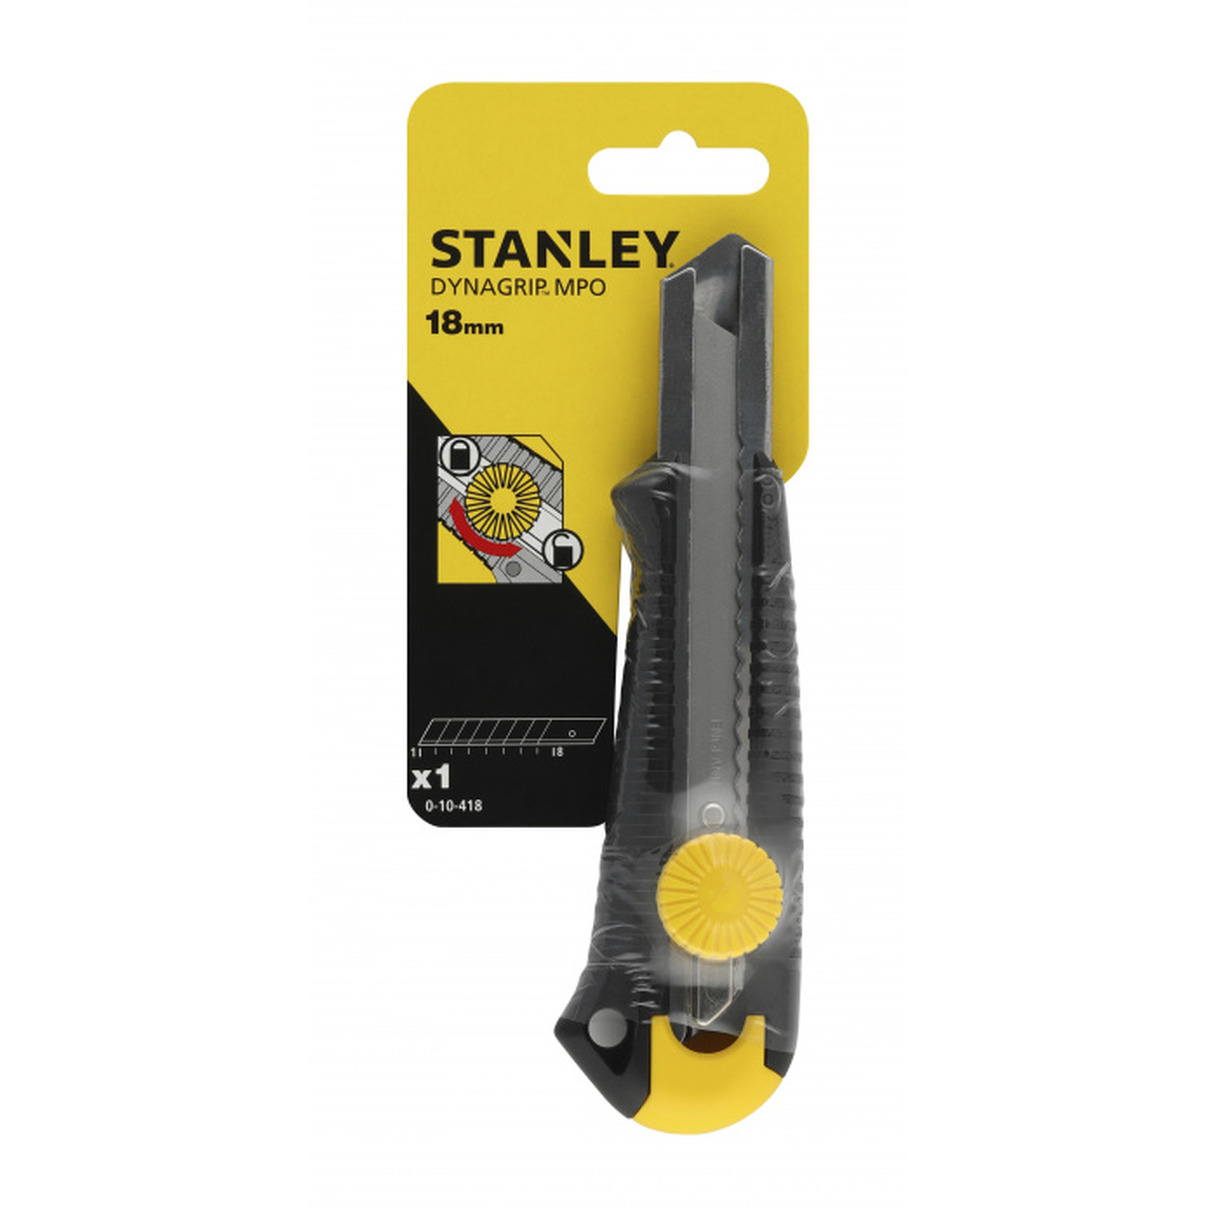 монтажный нож stanley dynagrip 0 10 788 серебристый Нож Stanley Dynagrip Mpo 18мм вращ.прижим 0-10-418